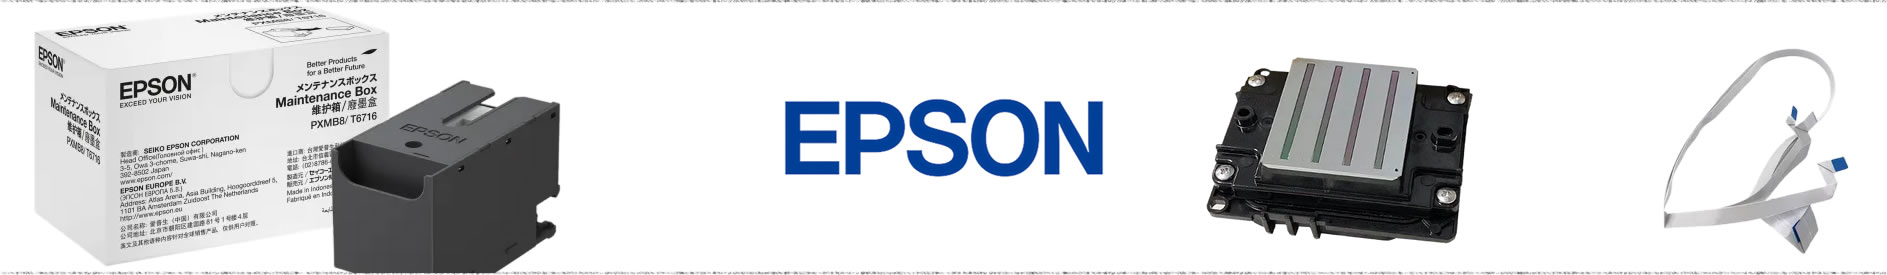 Linea de Soporte Epson ❤️ | 3006011859 